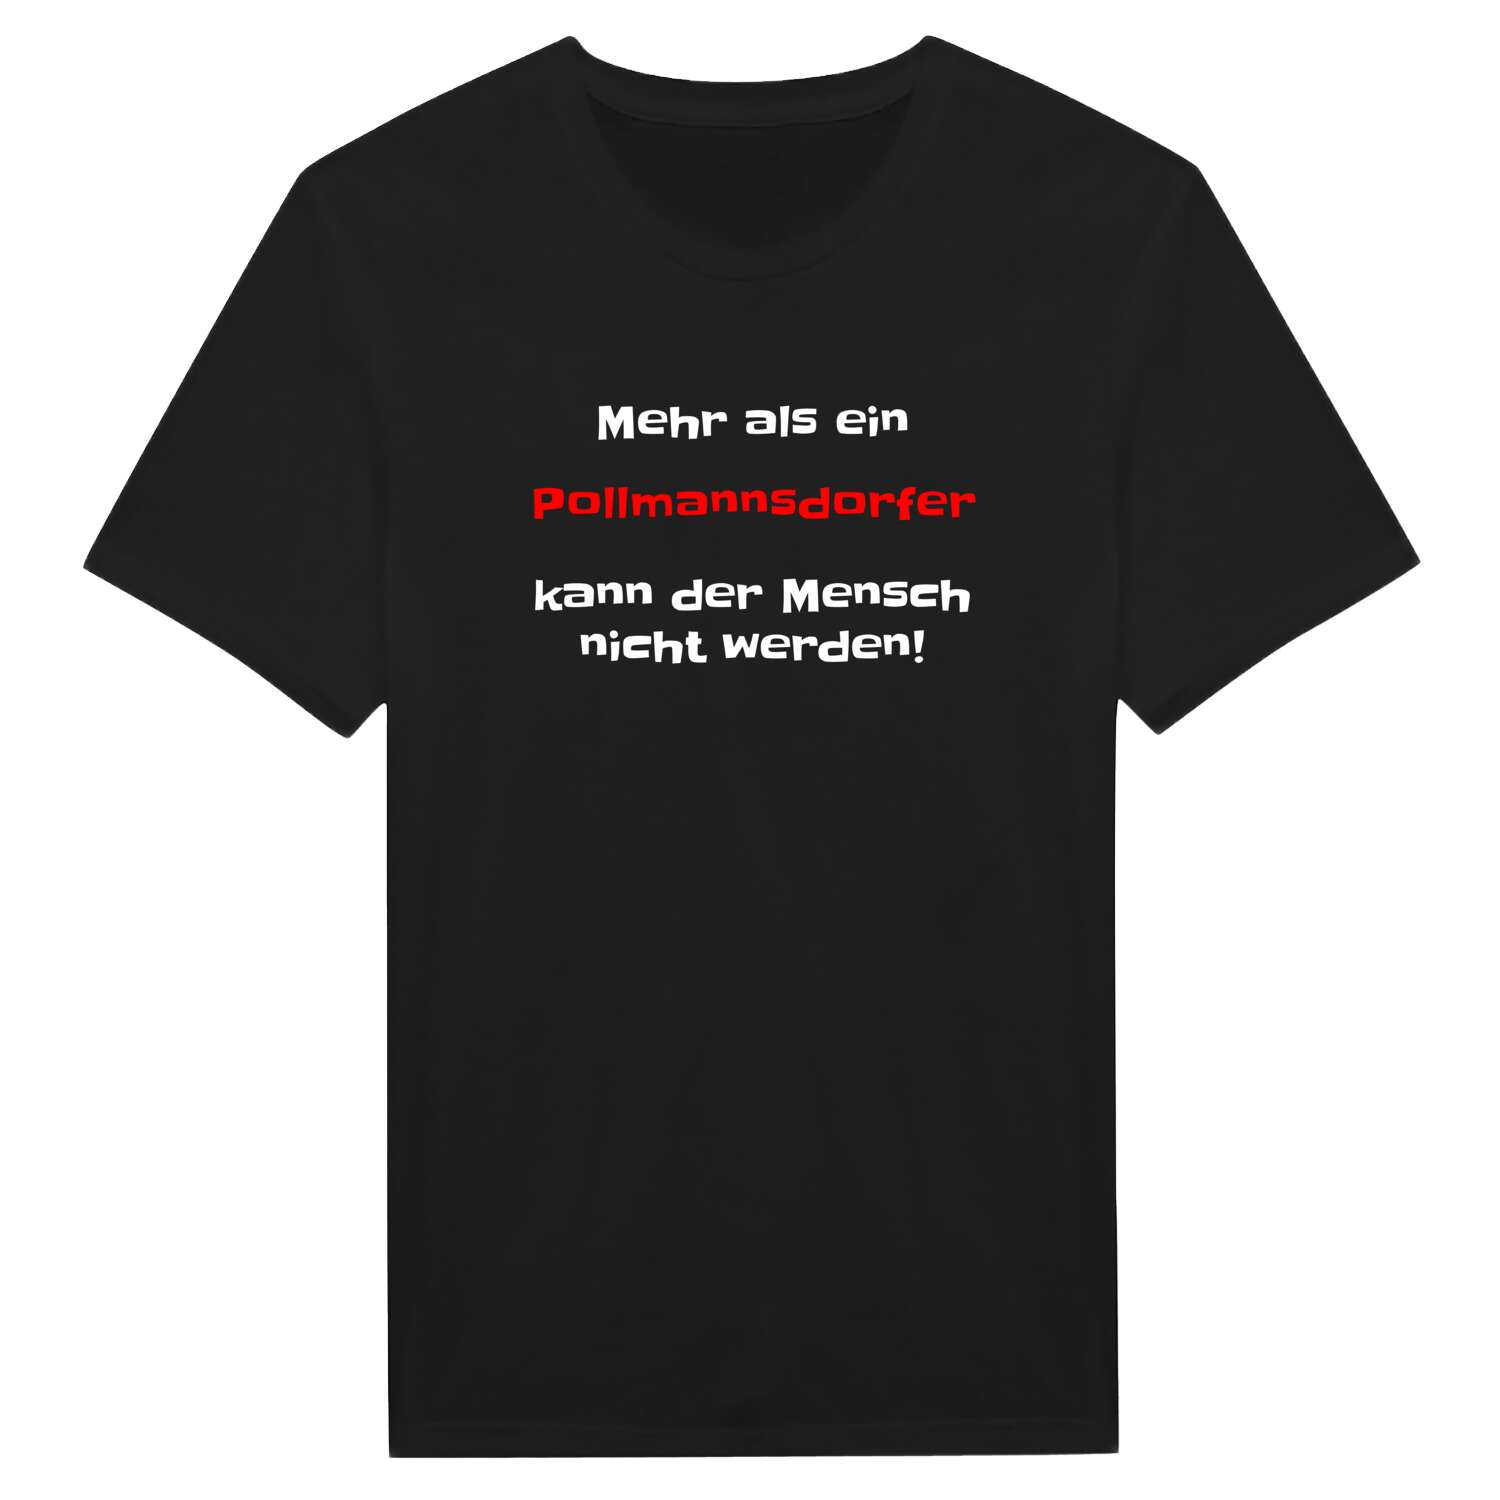 Pollmannsdorf T-Shirt »Mehr als ein«